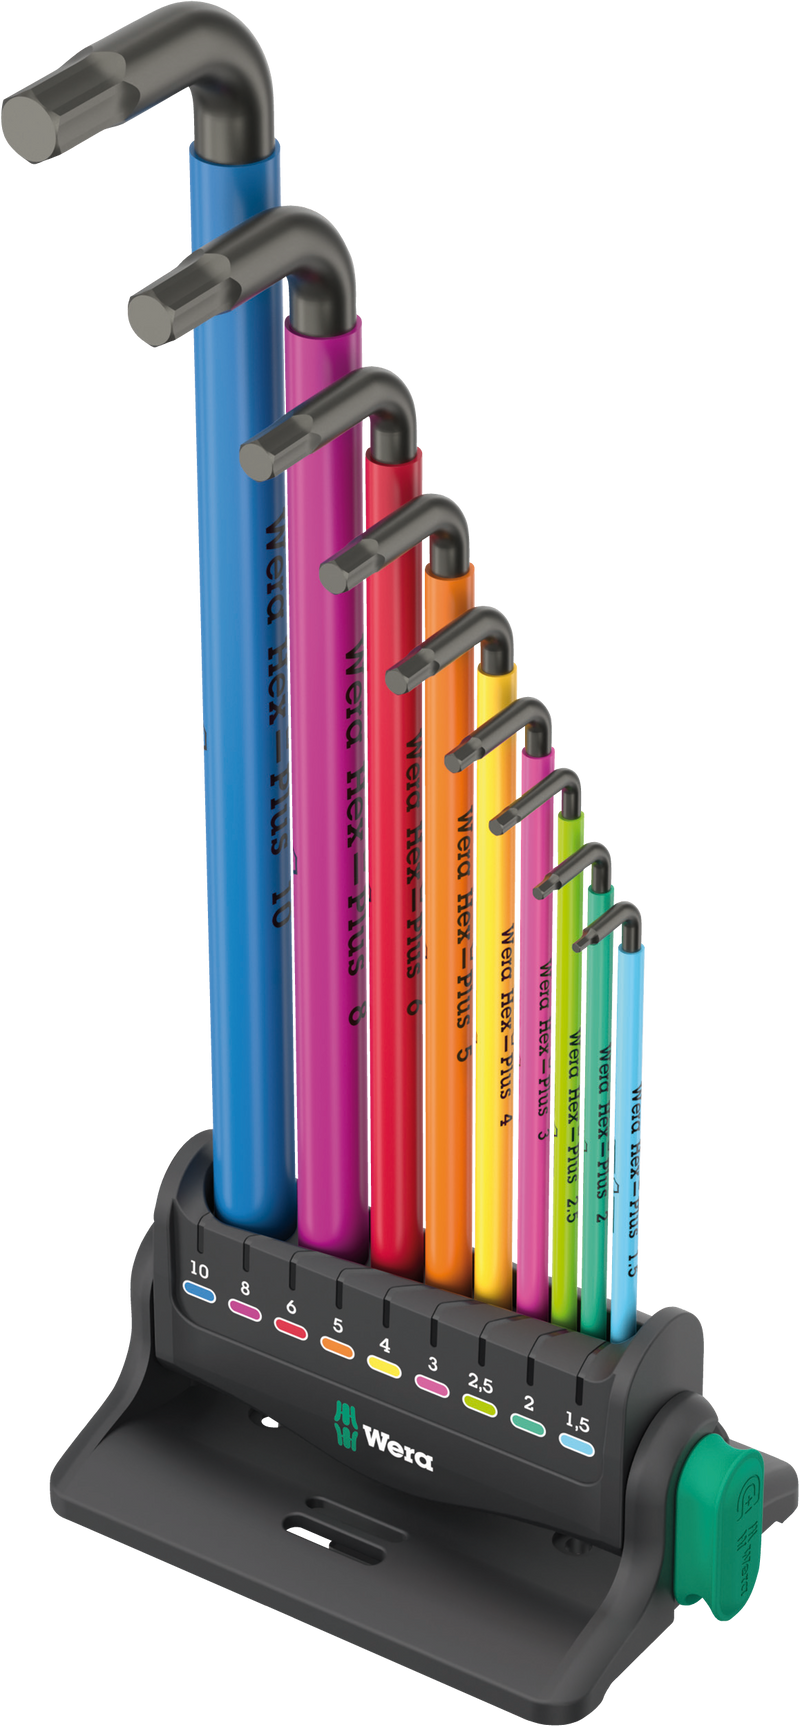 Wera 950/9 Spkl Hex-Plus Multicolour 3, Workshop Rack, 9pc, 05133165001